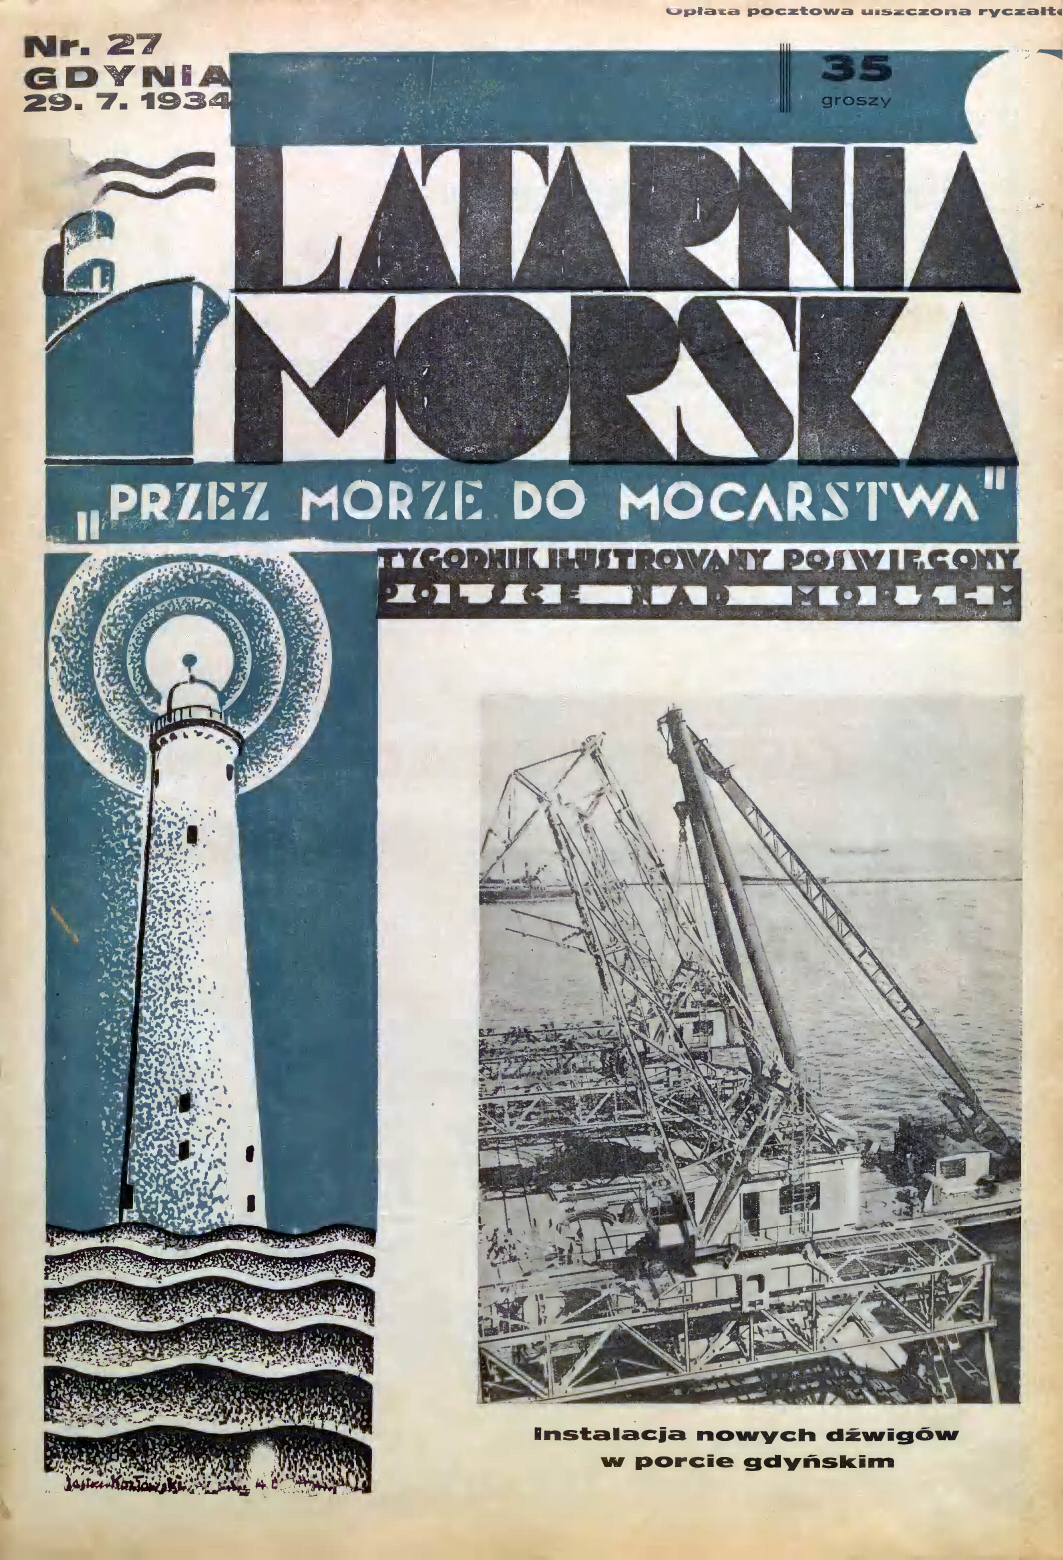  Latarnia Morska: tygodnik ilustrowany poświęcony Polsce nad morzem. – Gdynia : Balto Polak – Zakłady Graficzne i Wydawnicze, 1934, nr 27